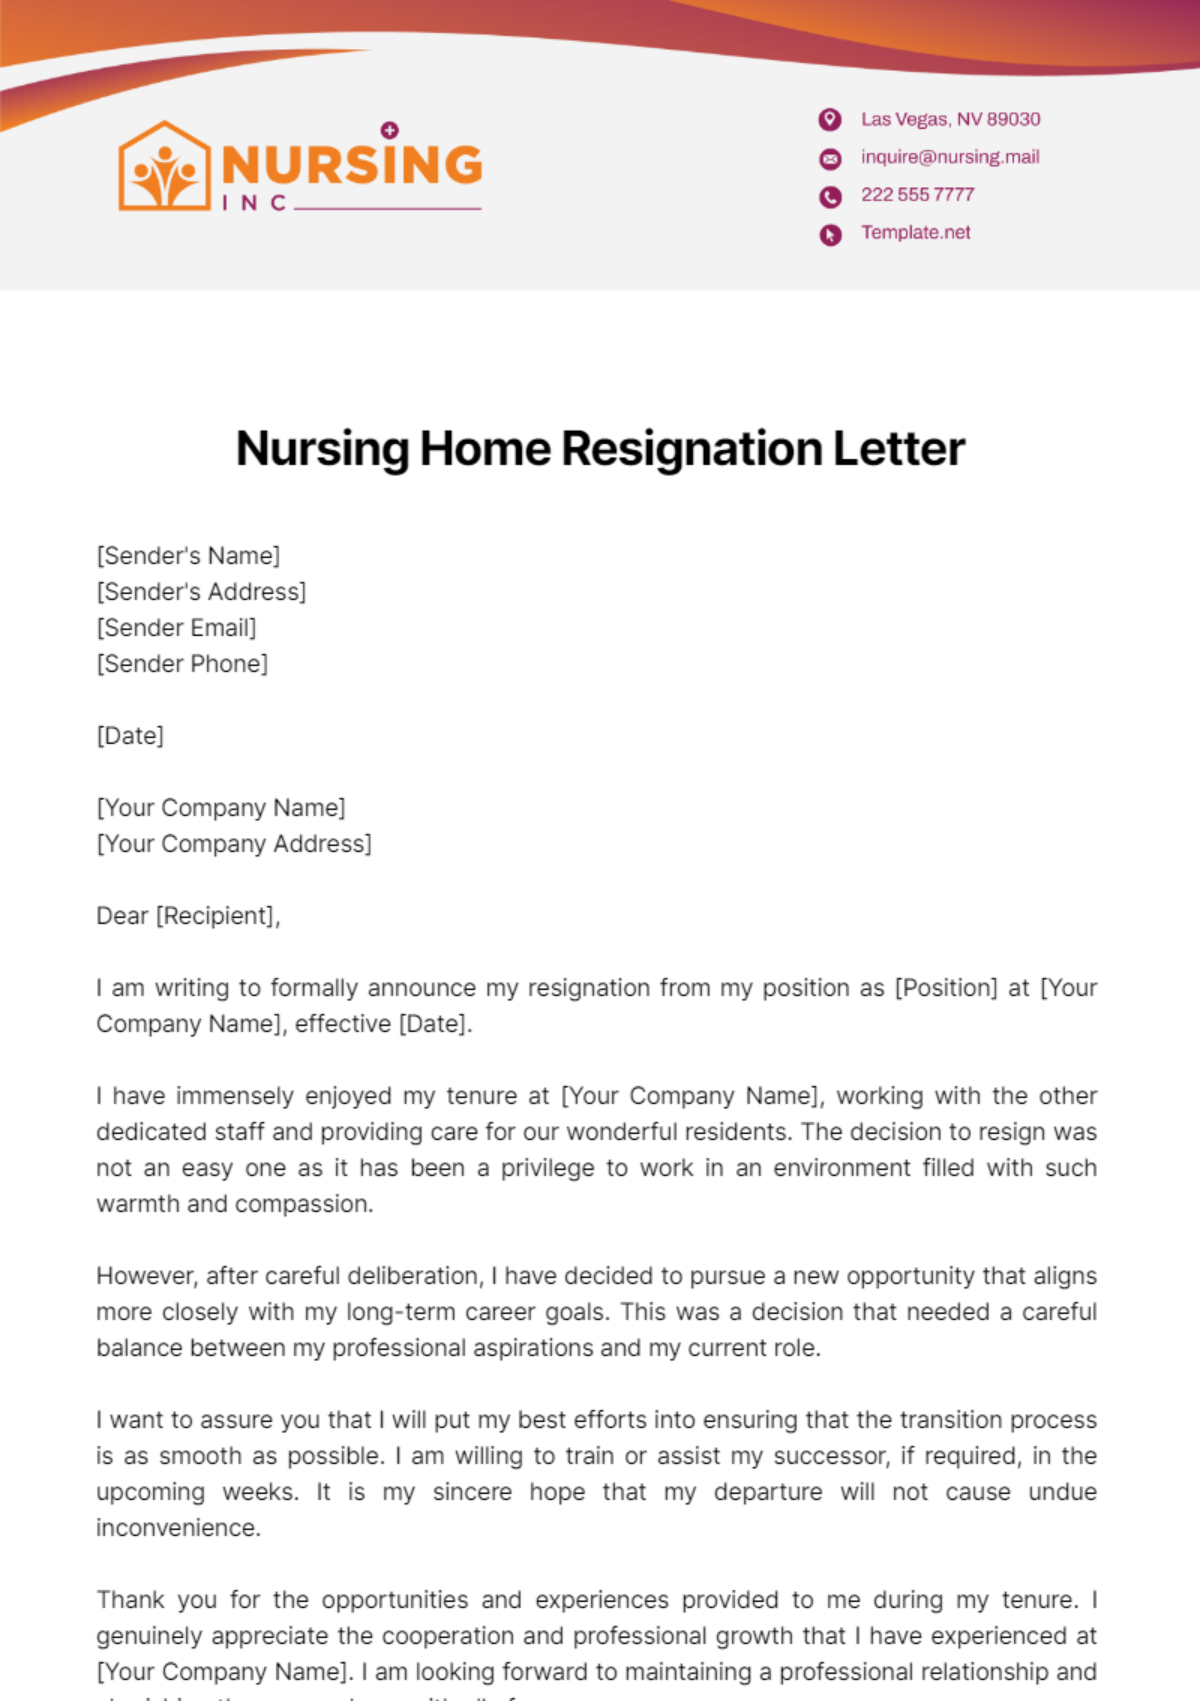 Nursing Home Resignation Letter Template